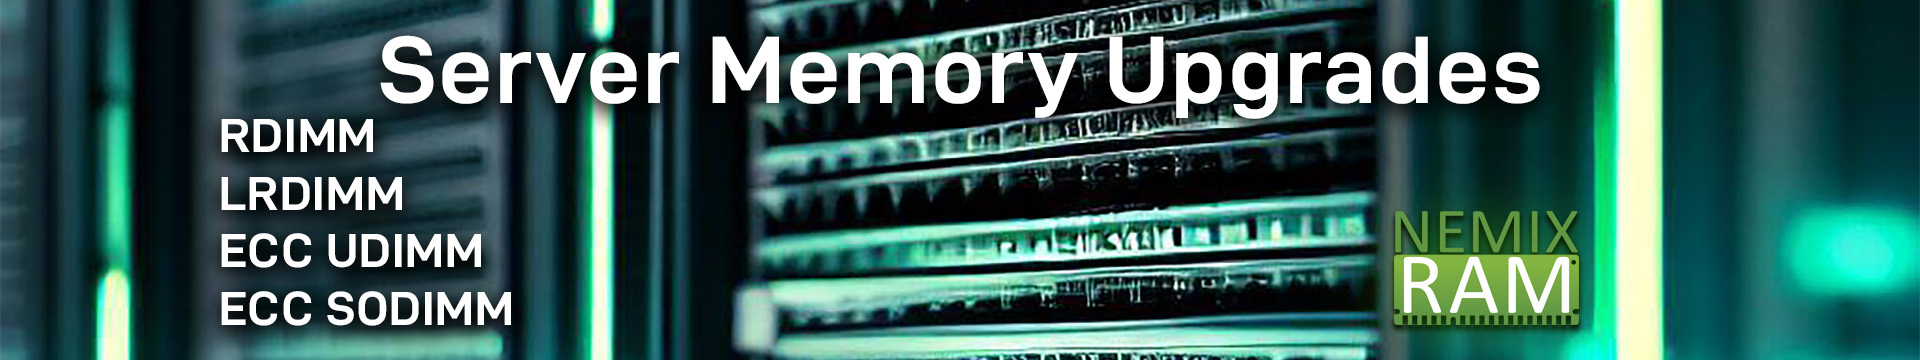 Server Memory